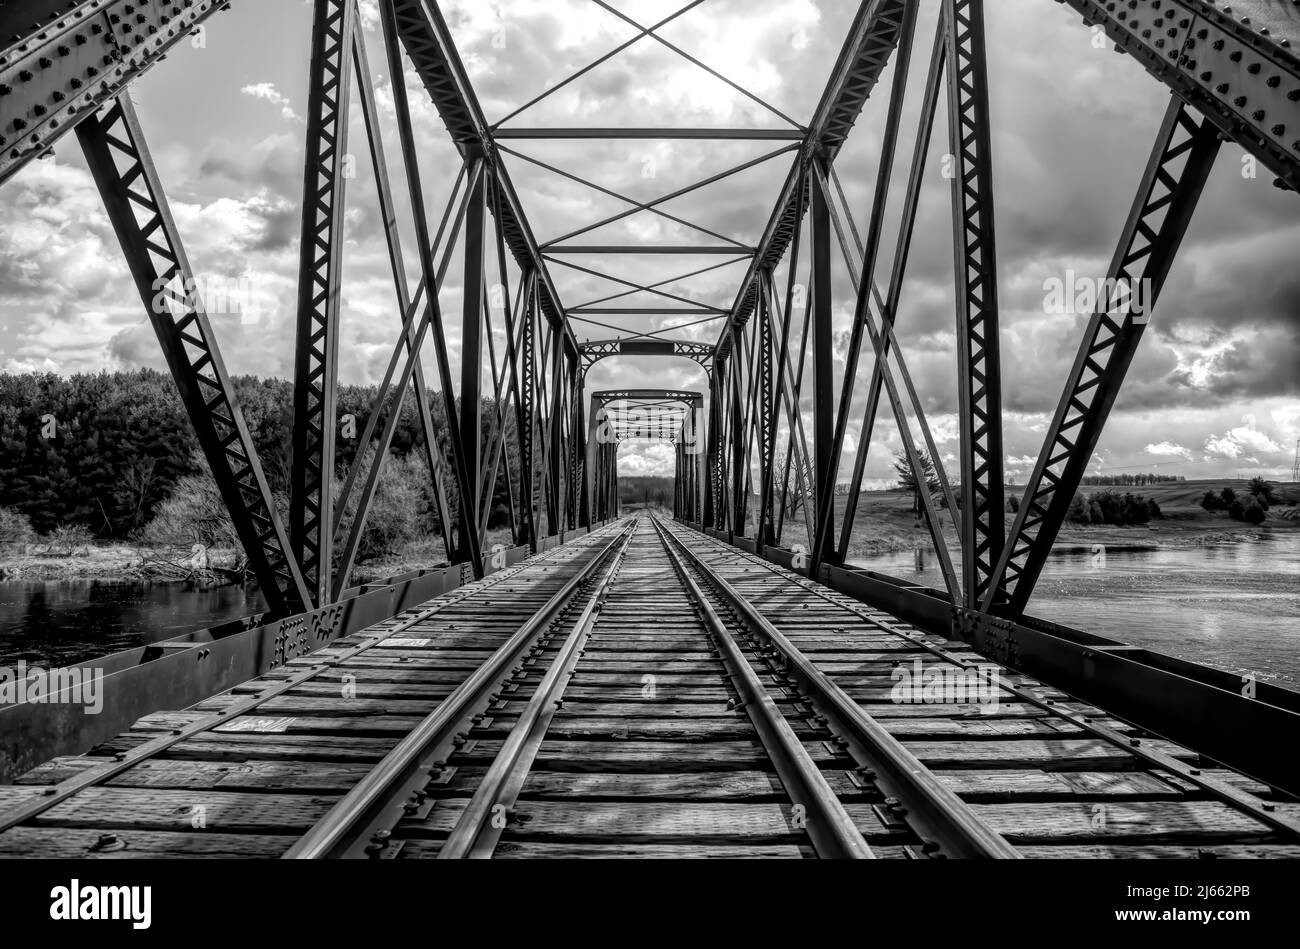 Ponte a traliccio a doppia apertura costruito nel 1893 attraversando il fiume Mississippi in primavera a Galetta, Ontario, Canada Foto Stock